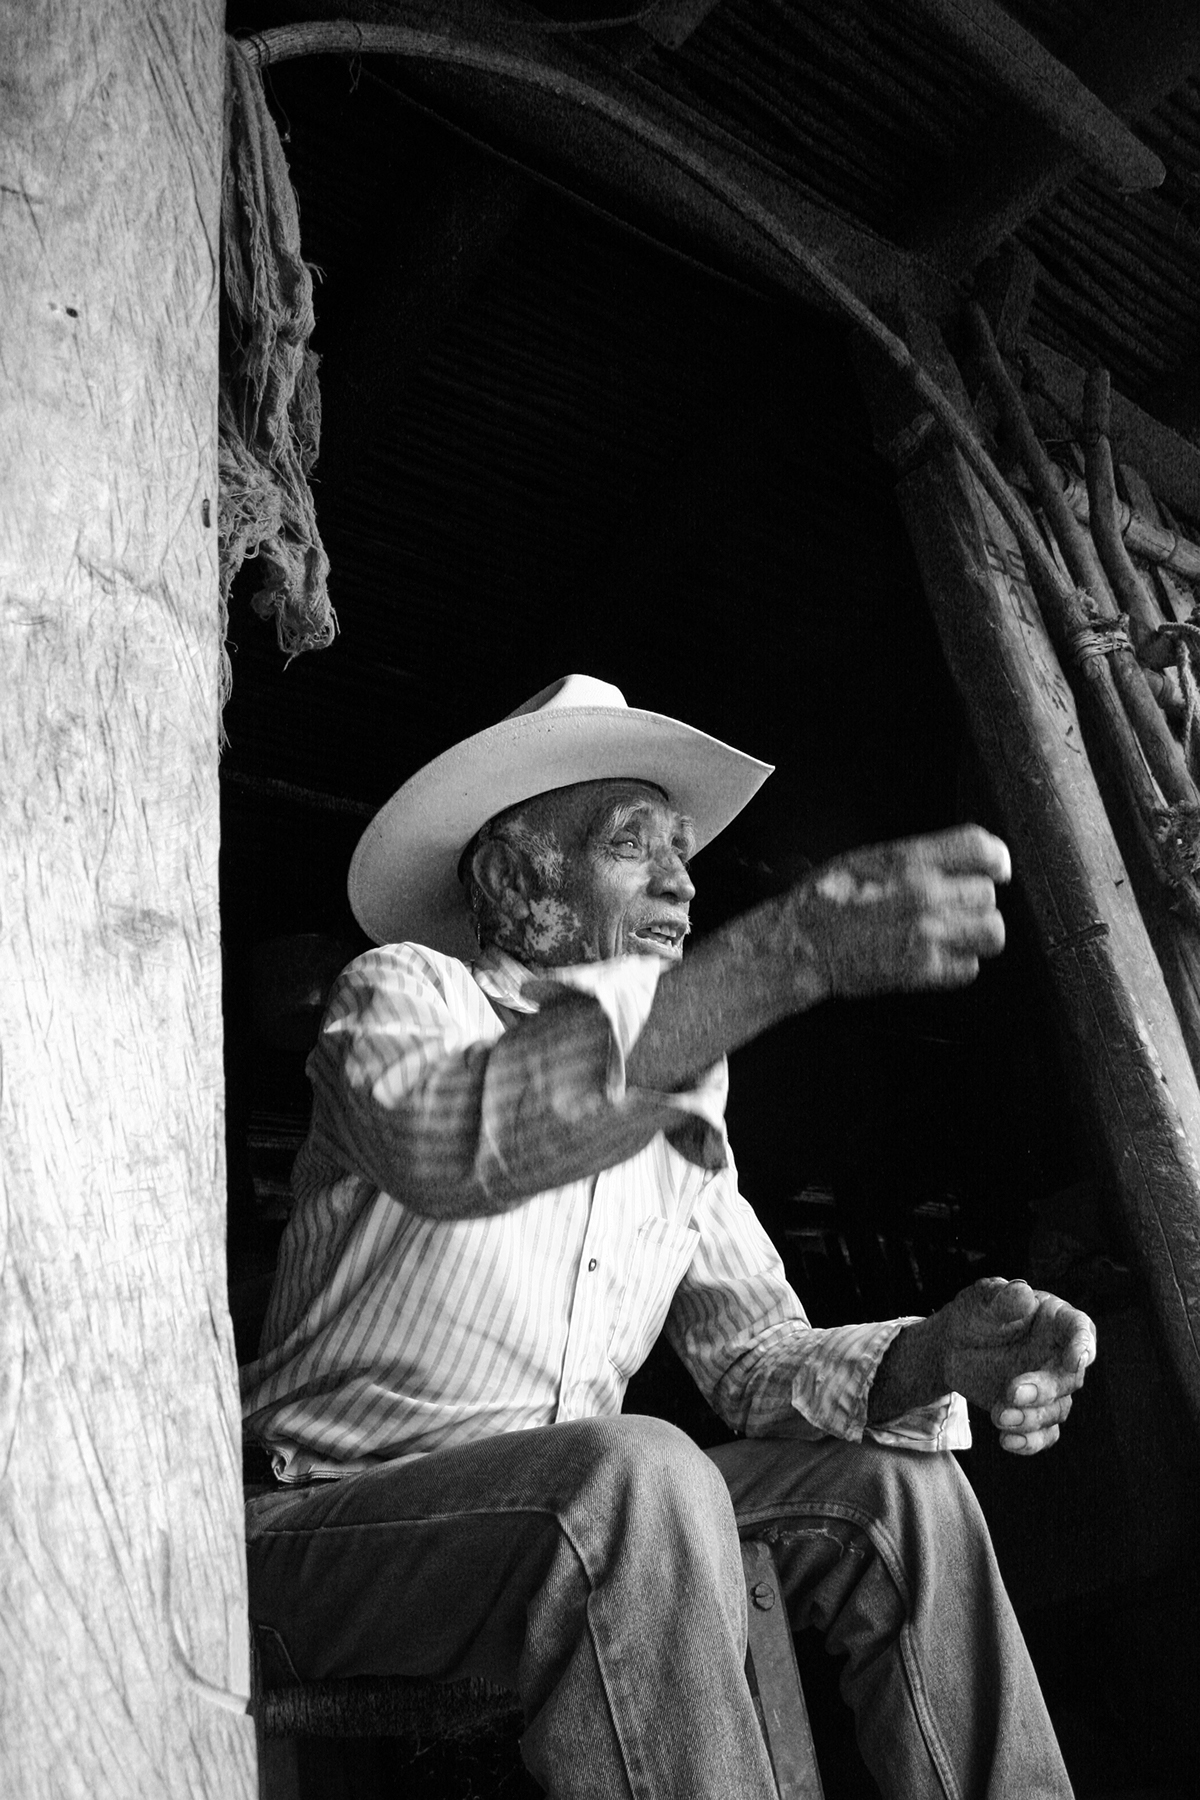 Queretaro mexico Fotografia retrato portrait blanco y negro black and white b&w photo Photography 